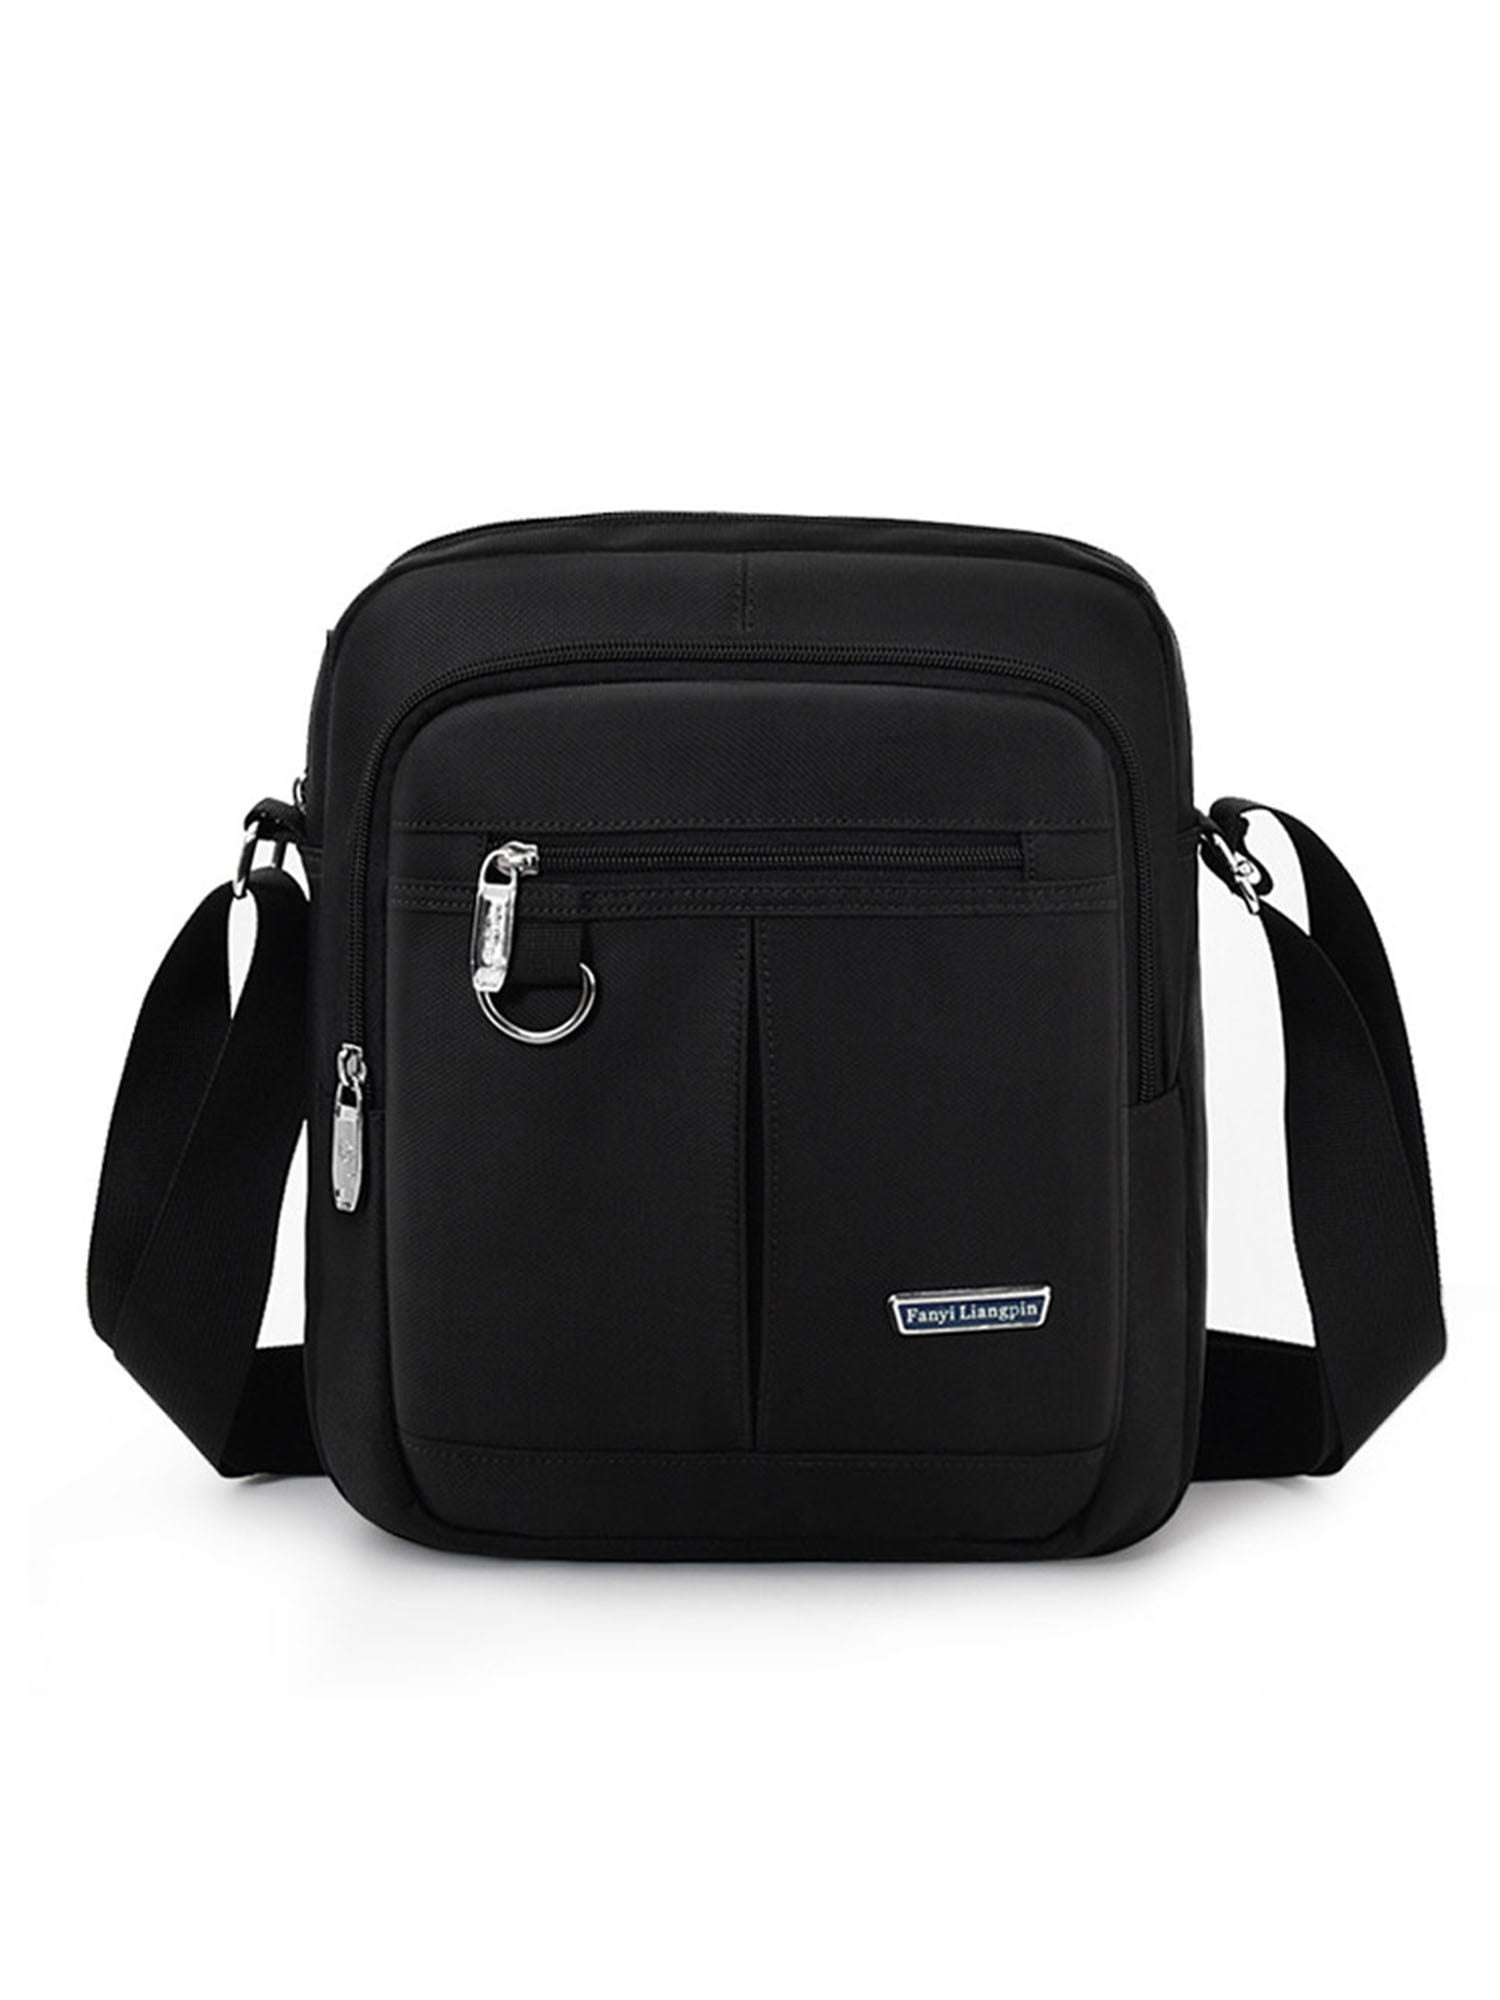 Frontwalk Boys Messenger Bag Large Capacity Sling Pack Adjustable Strap ...